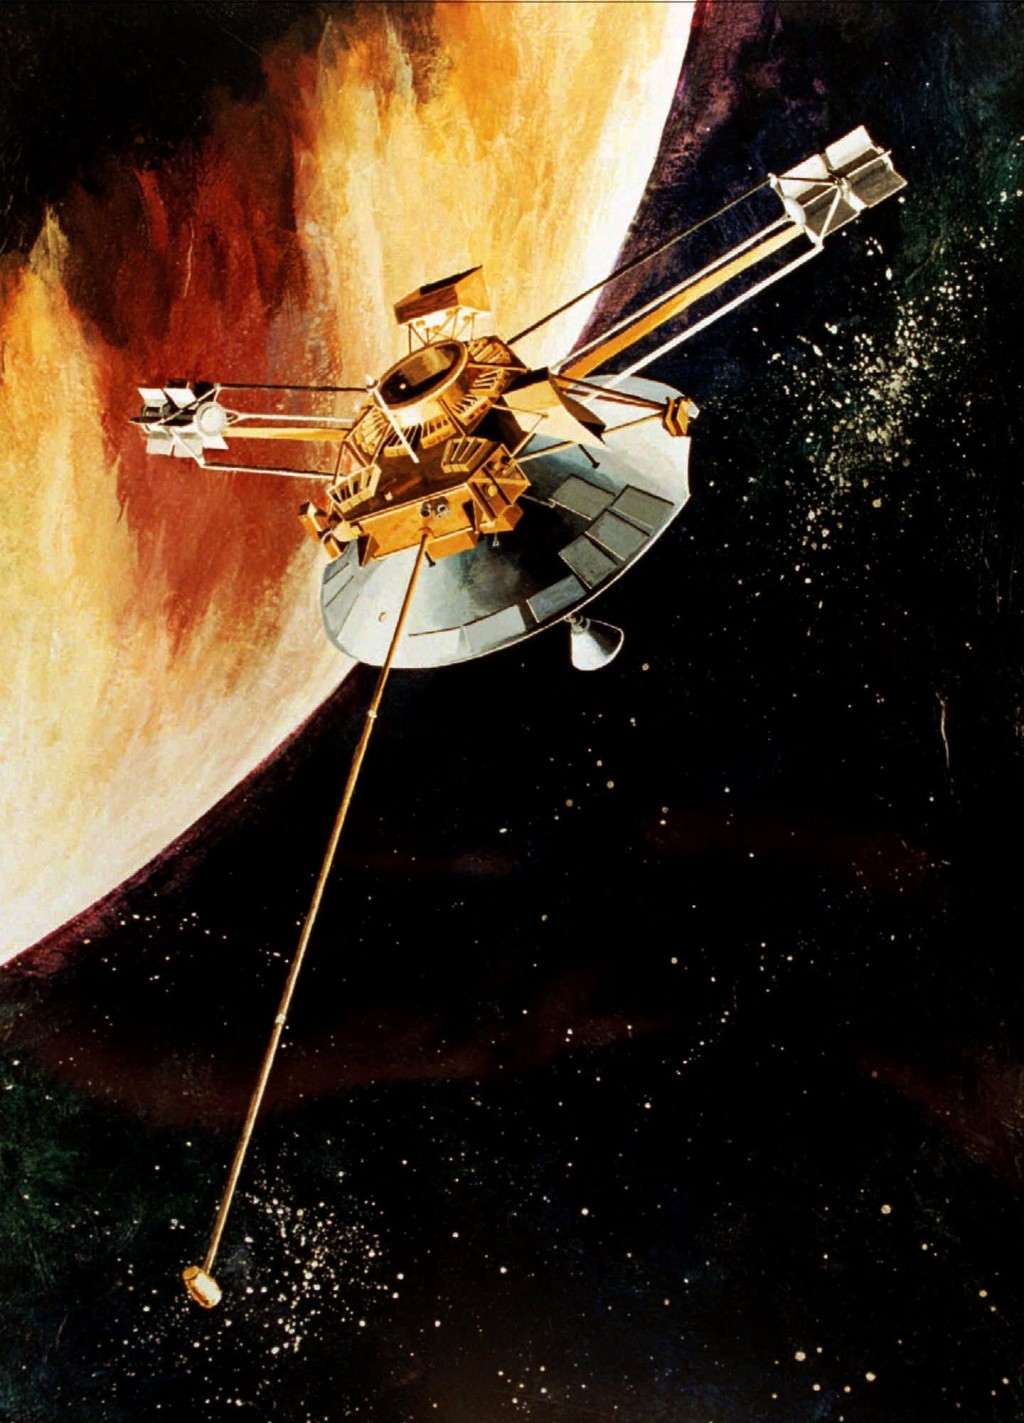 画家笔下「先锋10号」在1973年飞越木星的情景。 美联社